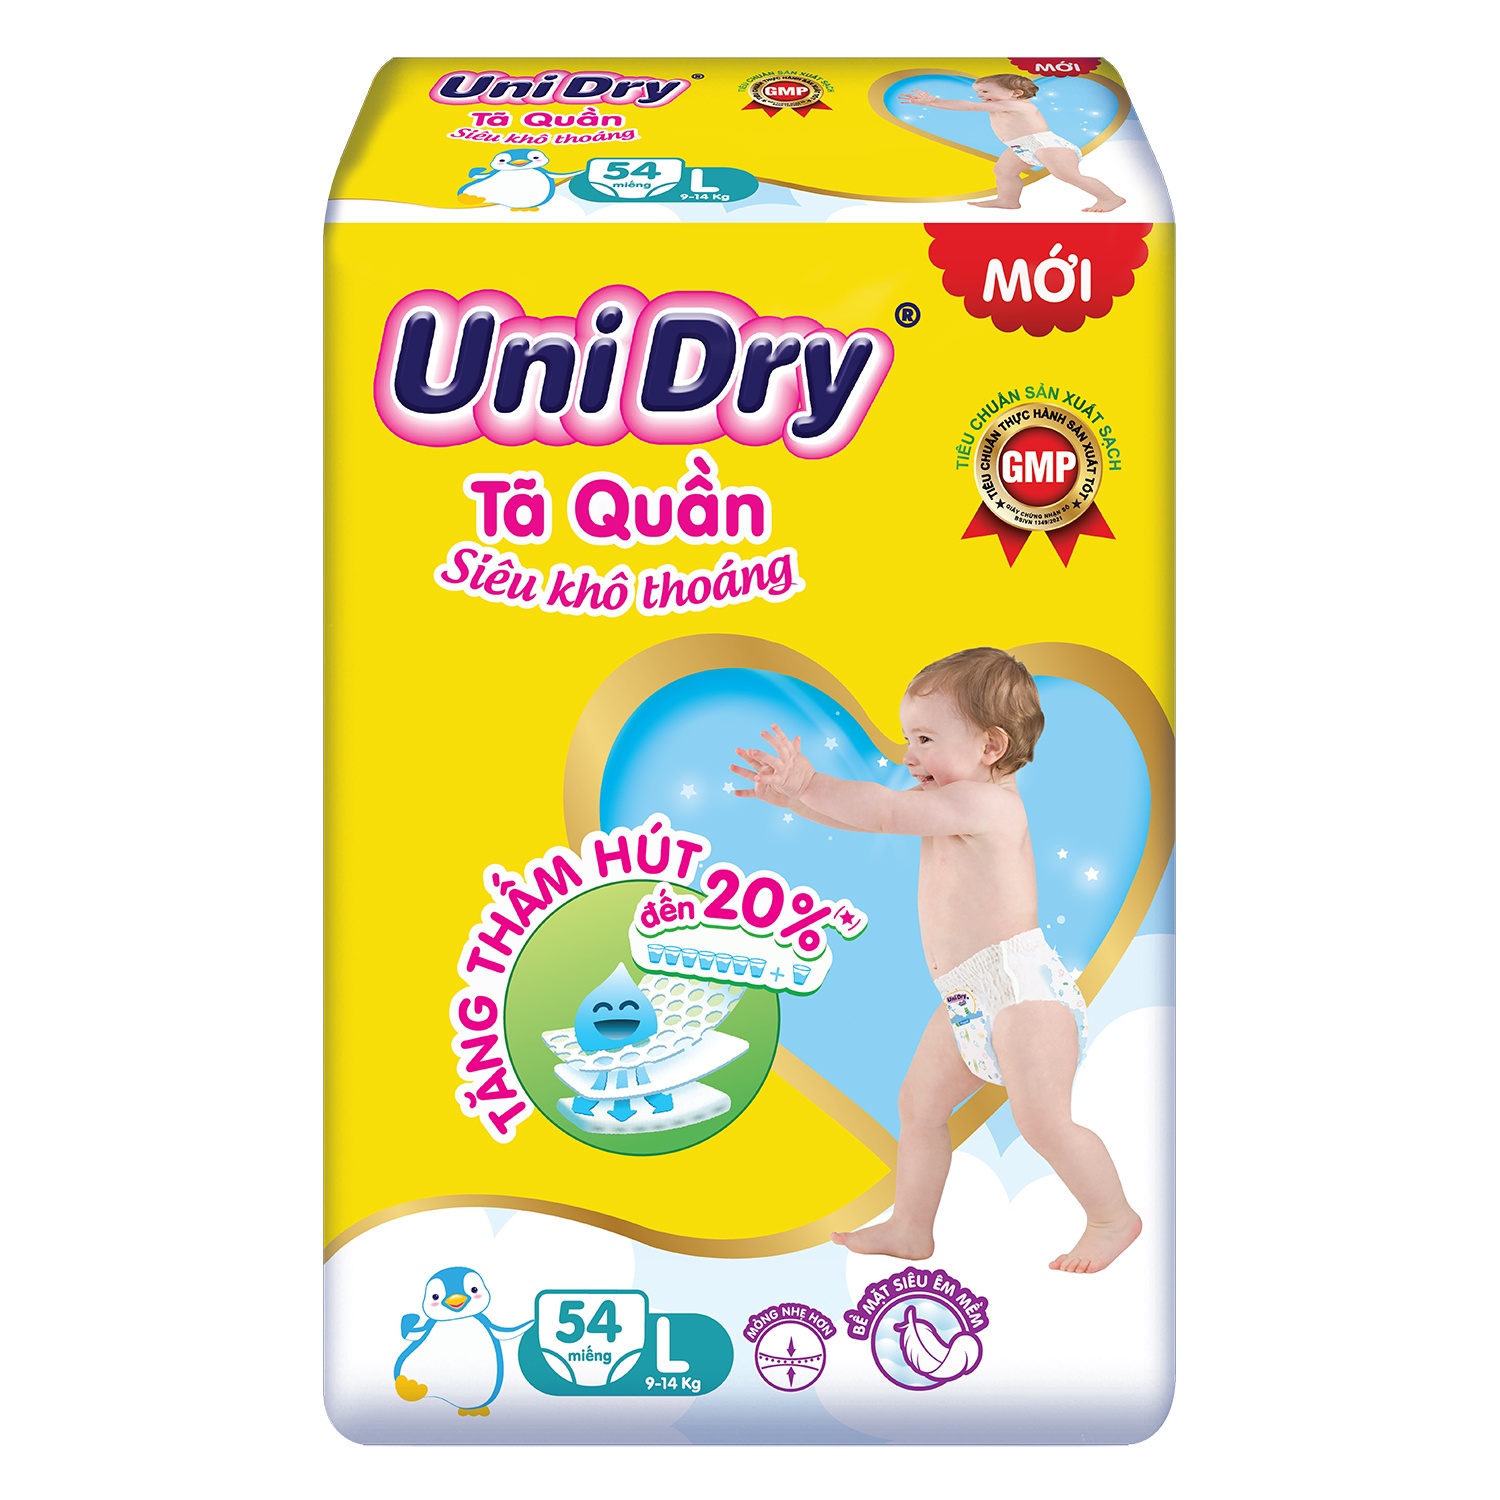 Tả Unidry - Đánh giá sản phẩm và tin tức mới nhất từ Unidry